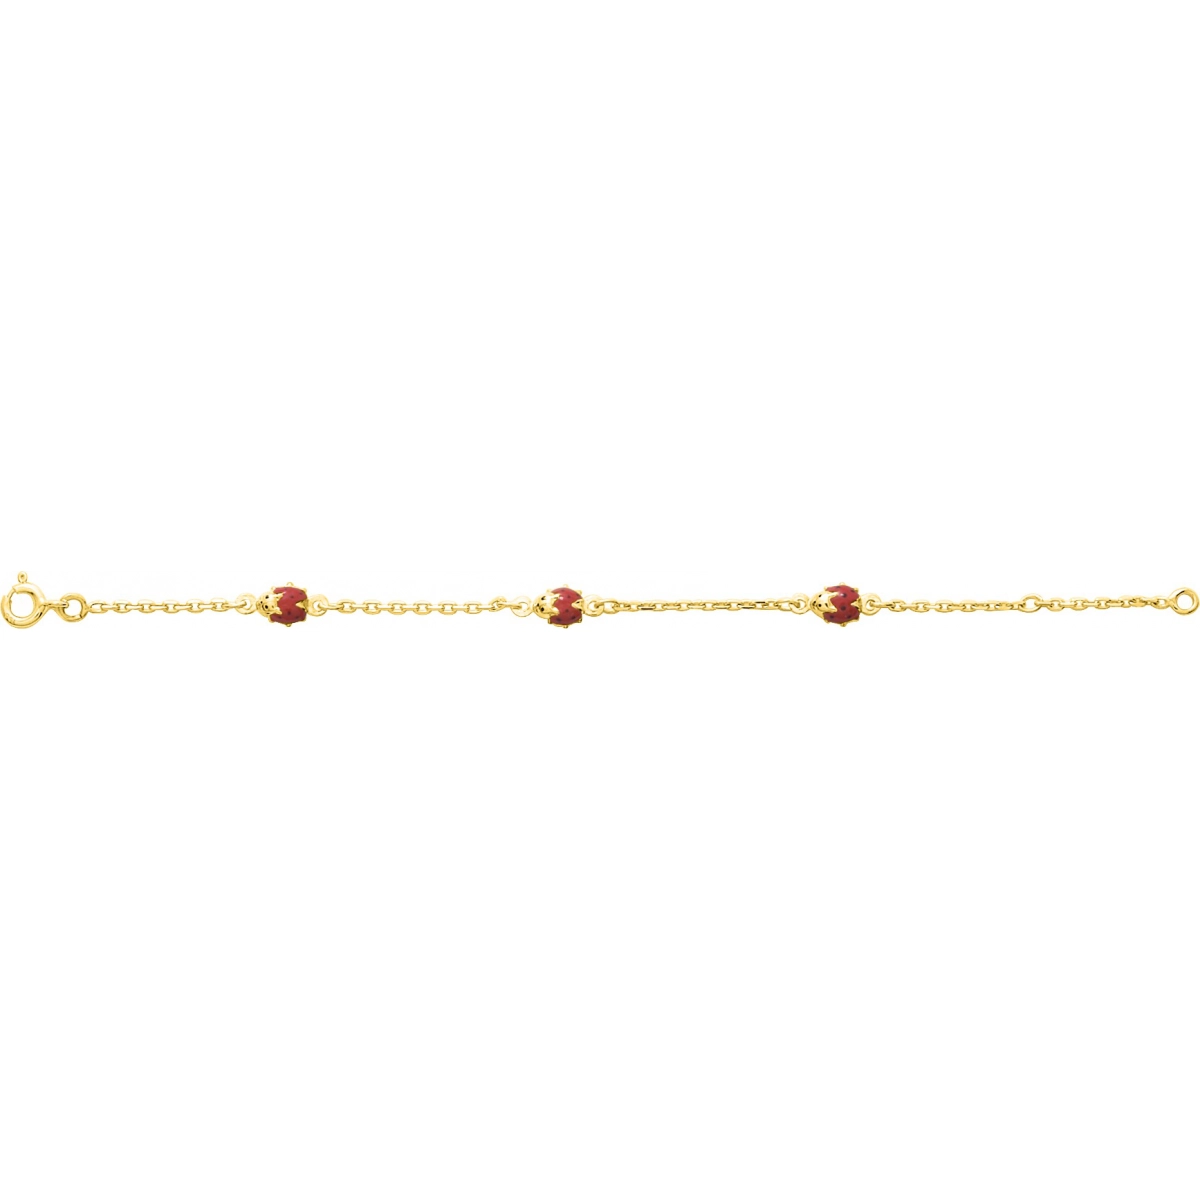 Bracelet 'ladybird' baby 18K YG - Size: 14  Lua Blanca  604.3.14